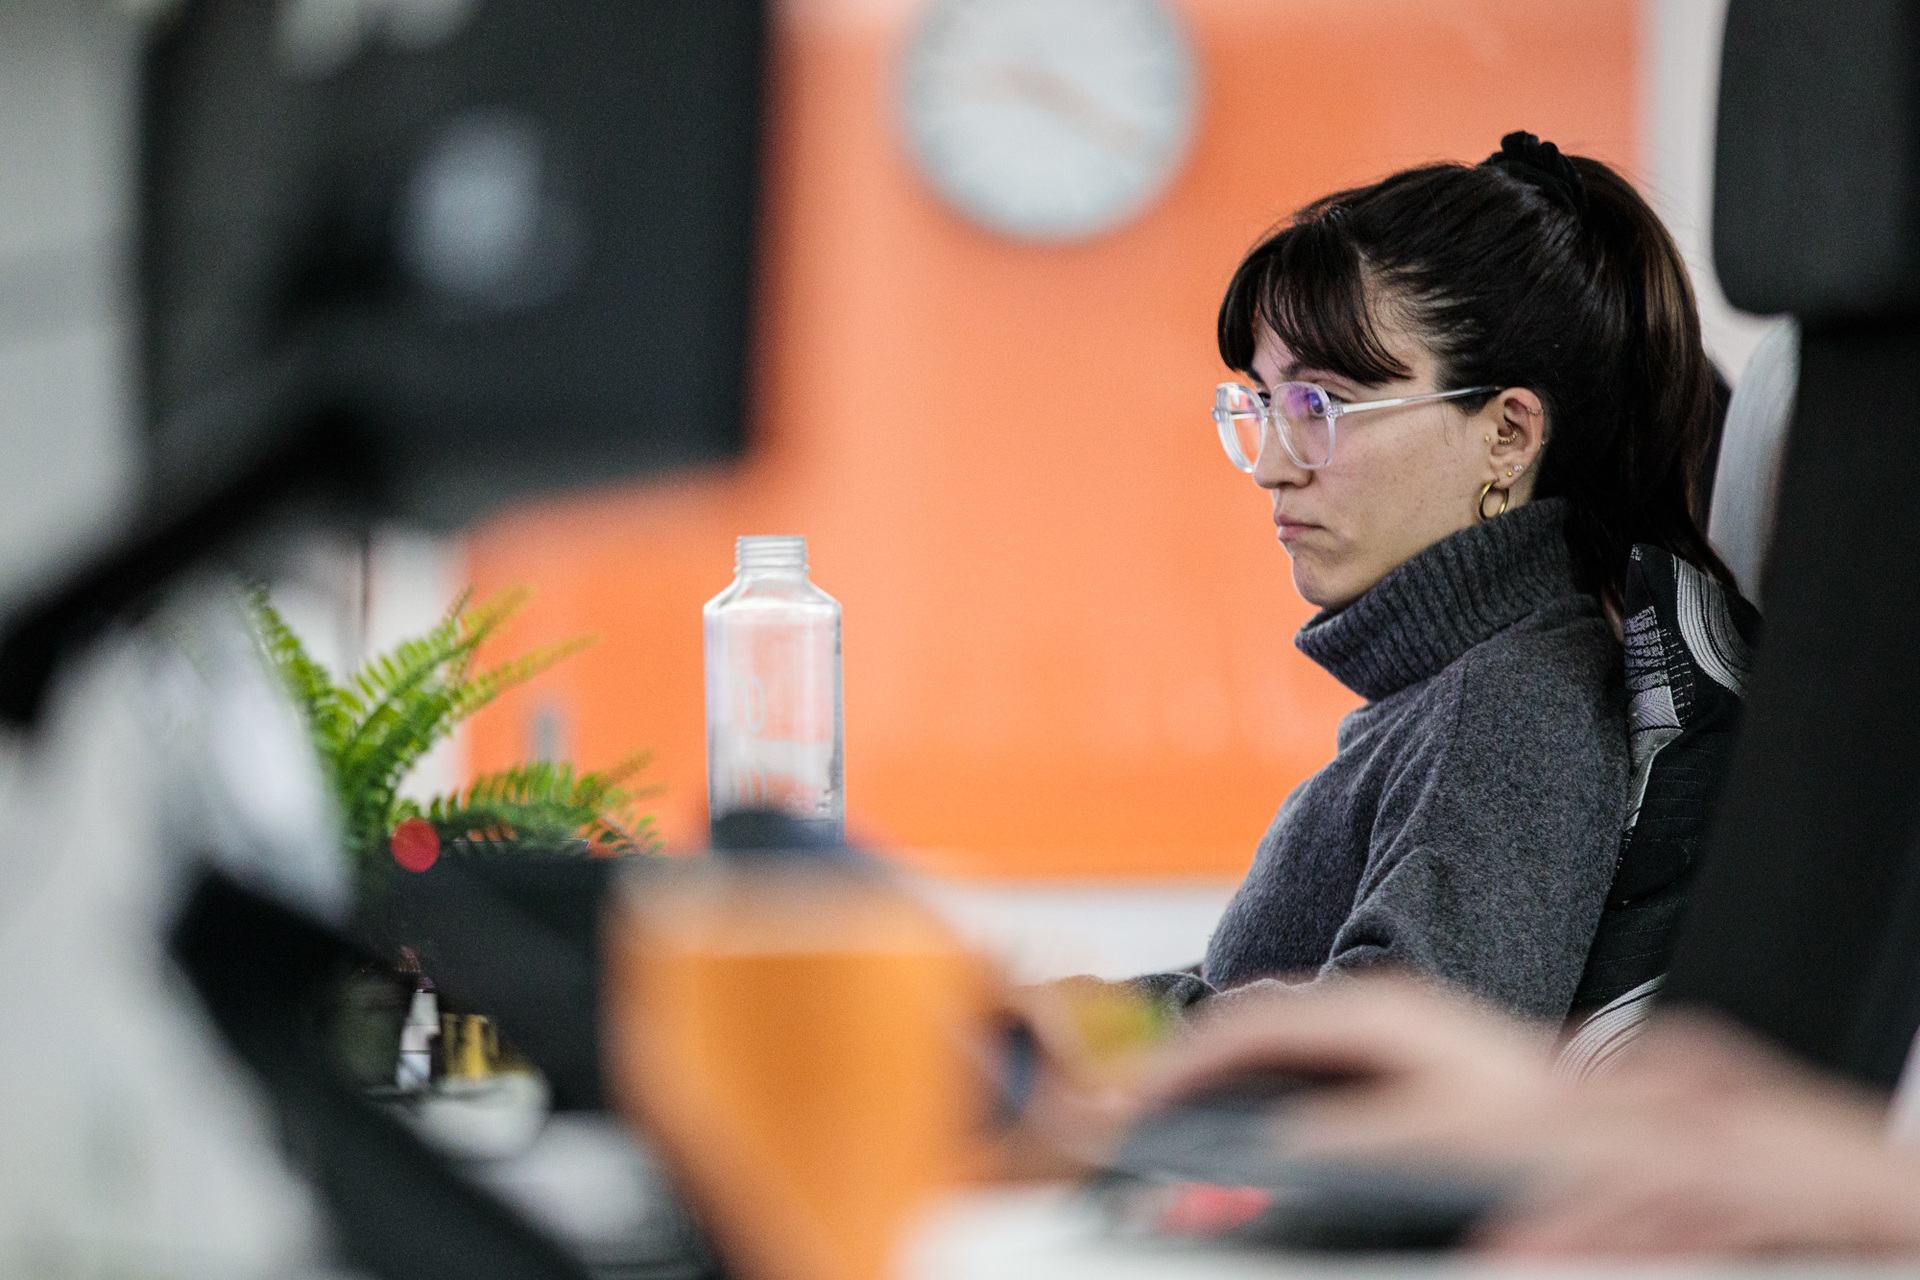 A website designer concentrating on her computer